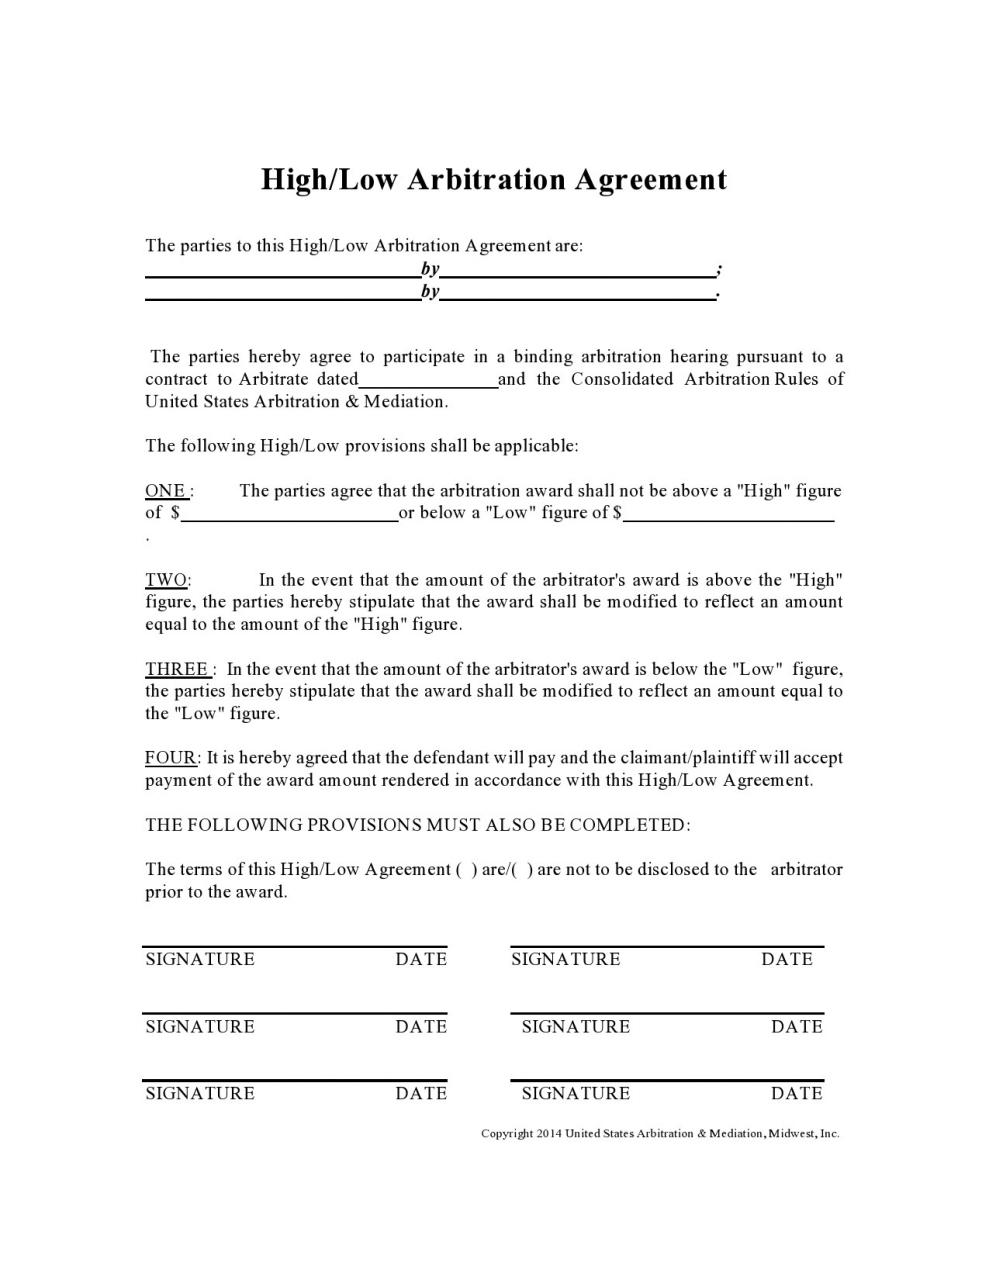 acuerdo de libre arbitraje 32